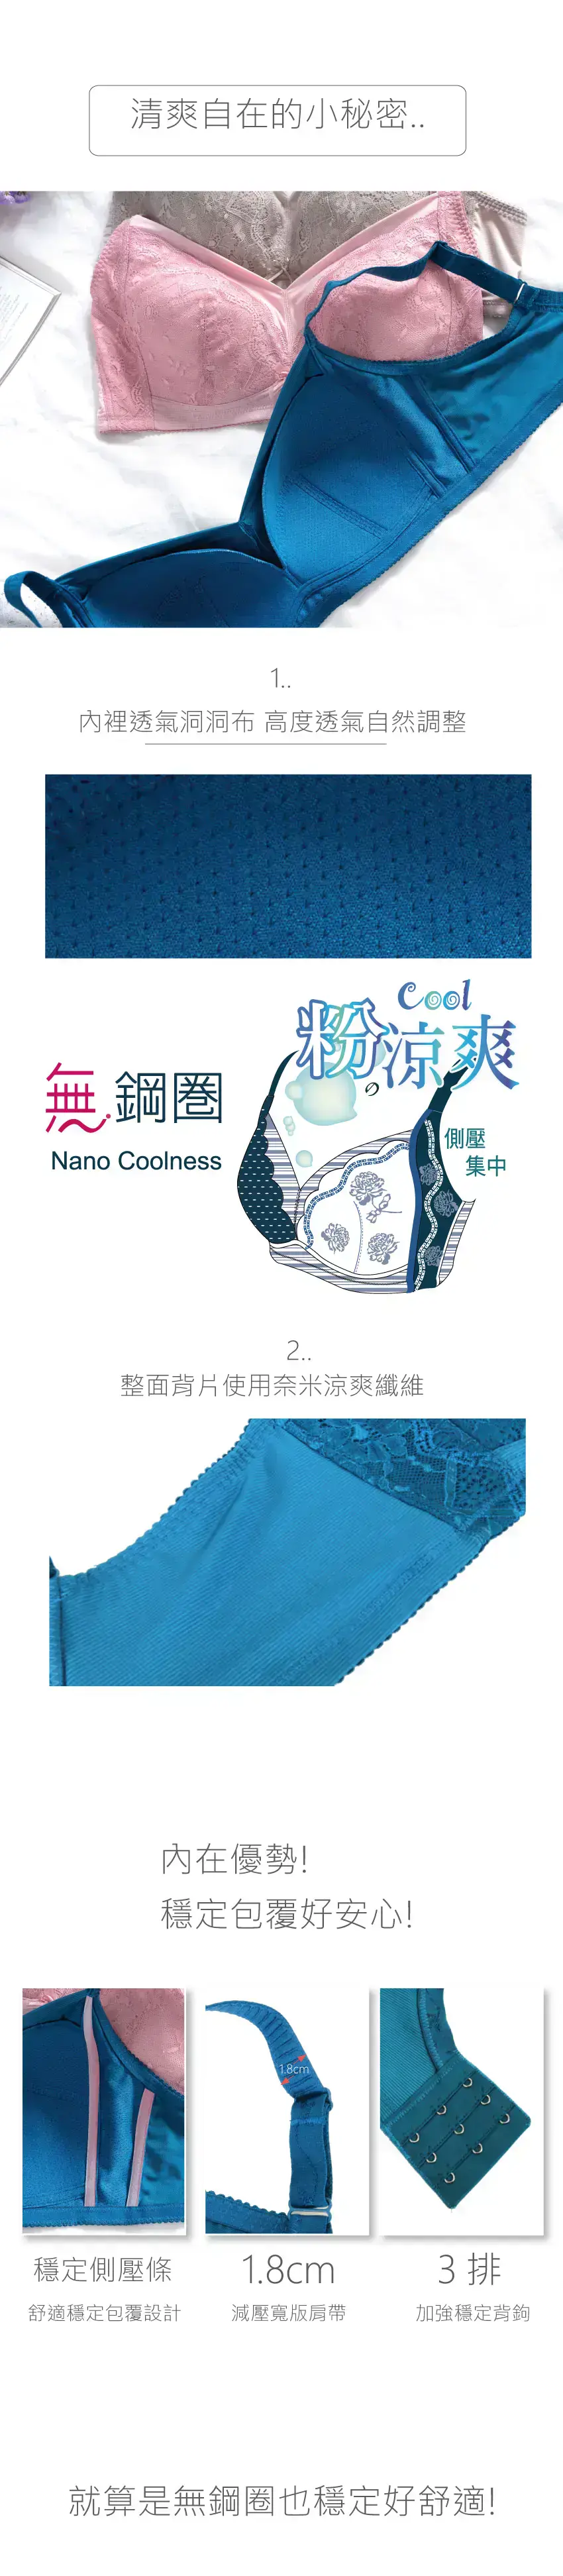 粉涼爽 無鋼圈奈米科技涼爽纖維內衣(湖水藍)BCDE